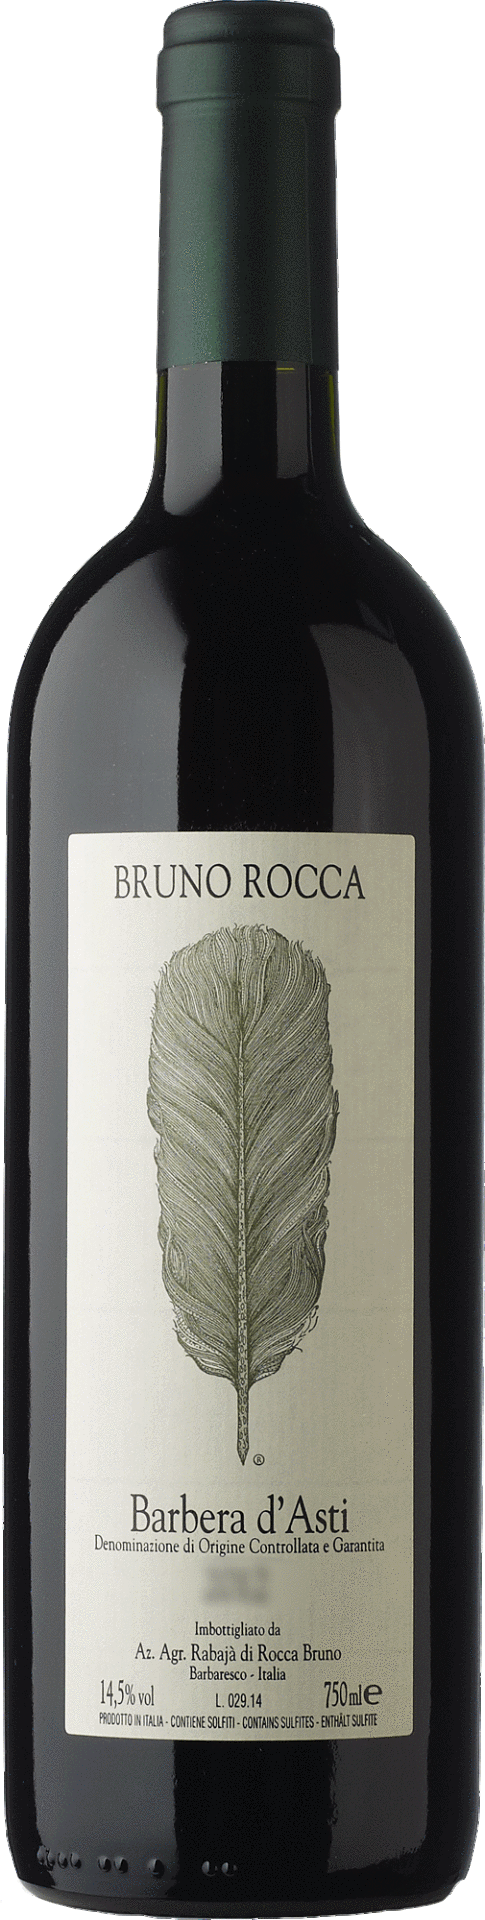 Bruno Rocca - Barbera d'Asti "Coparossa" 2013 (1.5L)